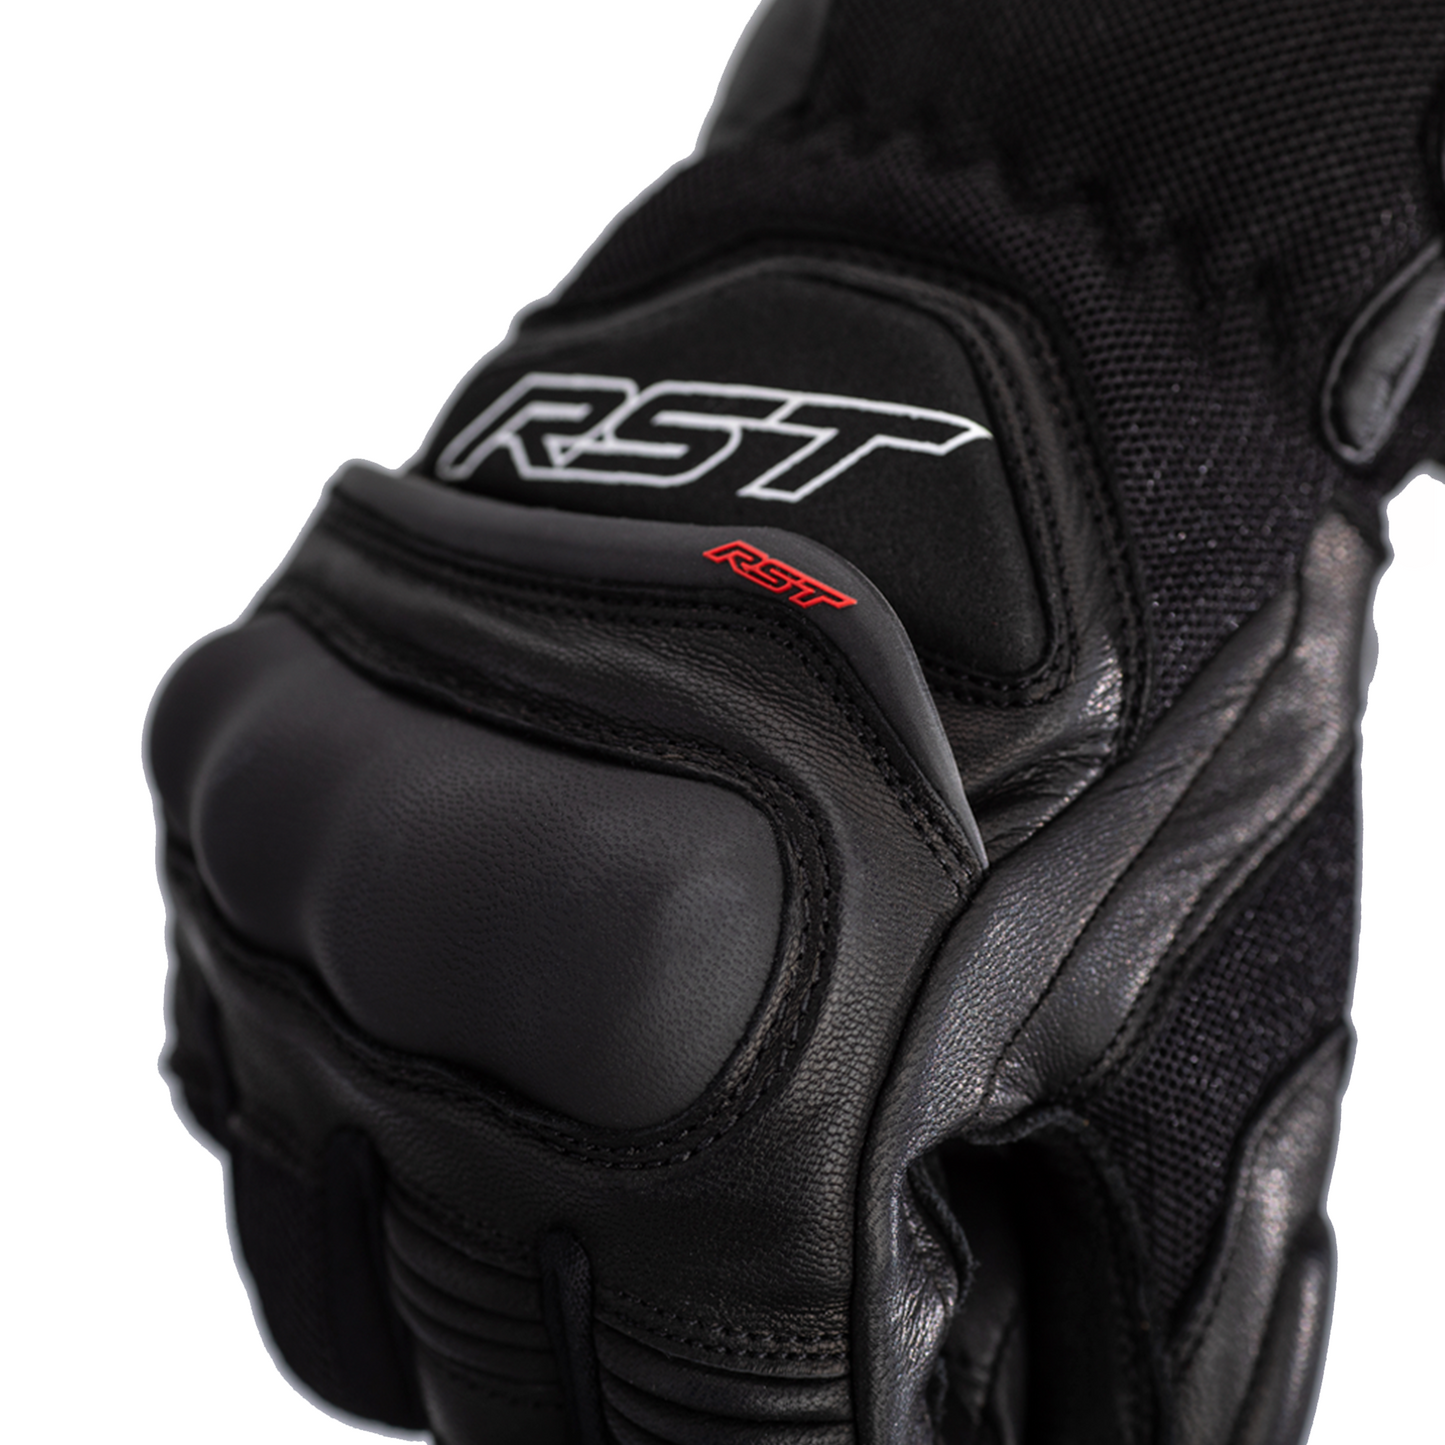 RST Urban Air 3 Mesh (CE) Riding Glove - Black (2673)